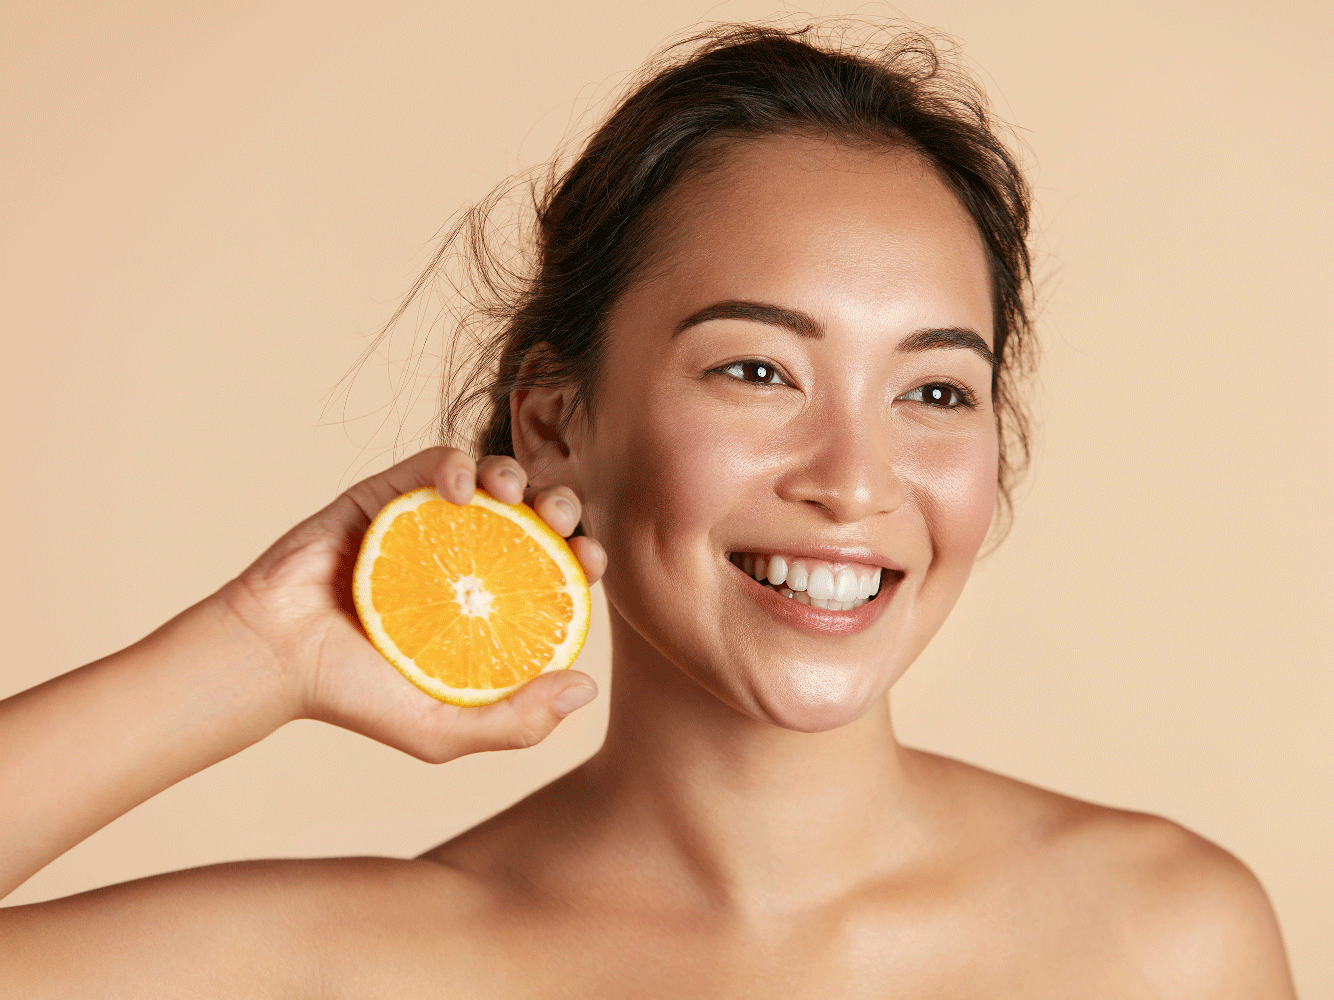 vitamin-c-for-skin: woman squeezing orange